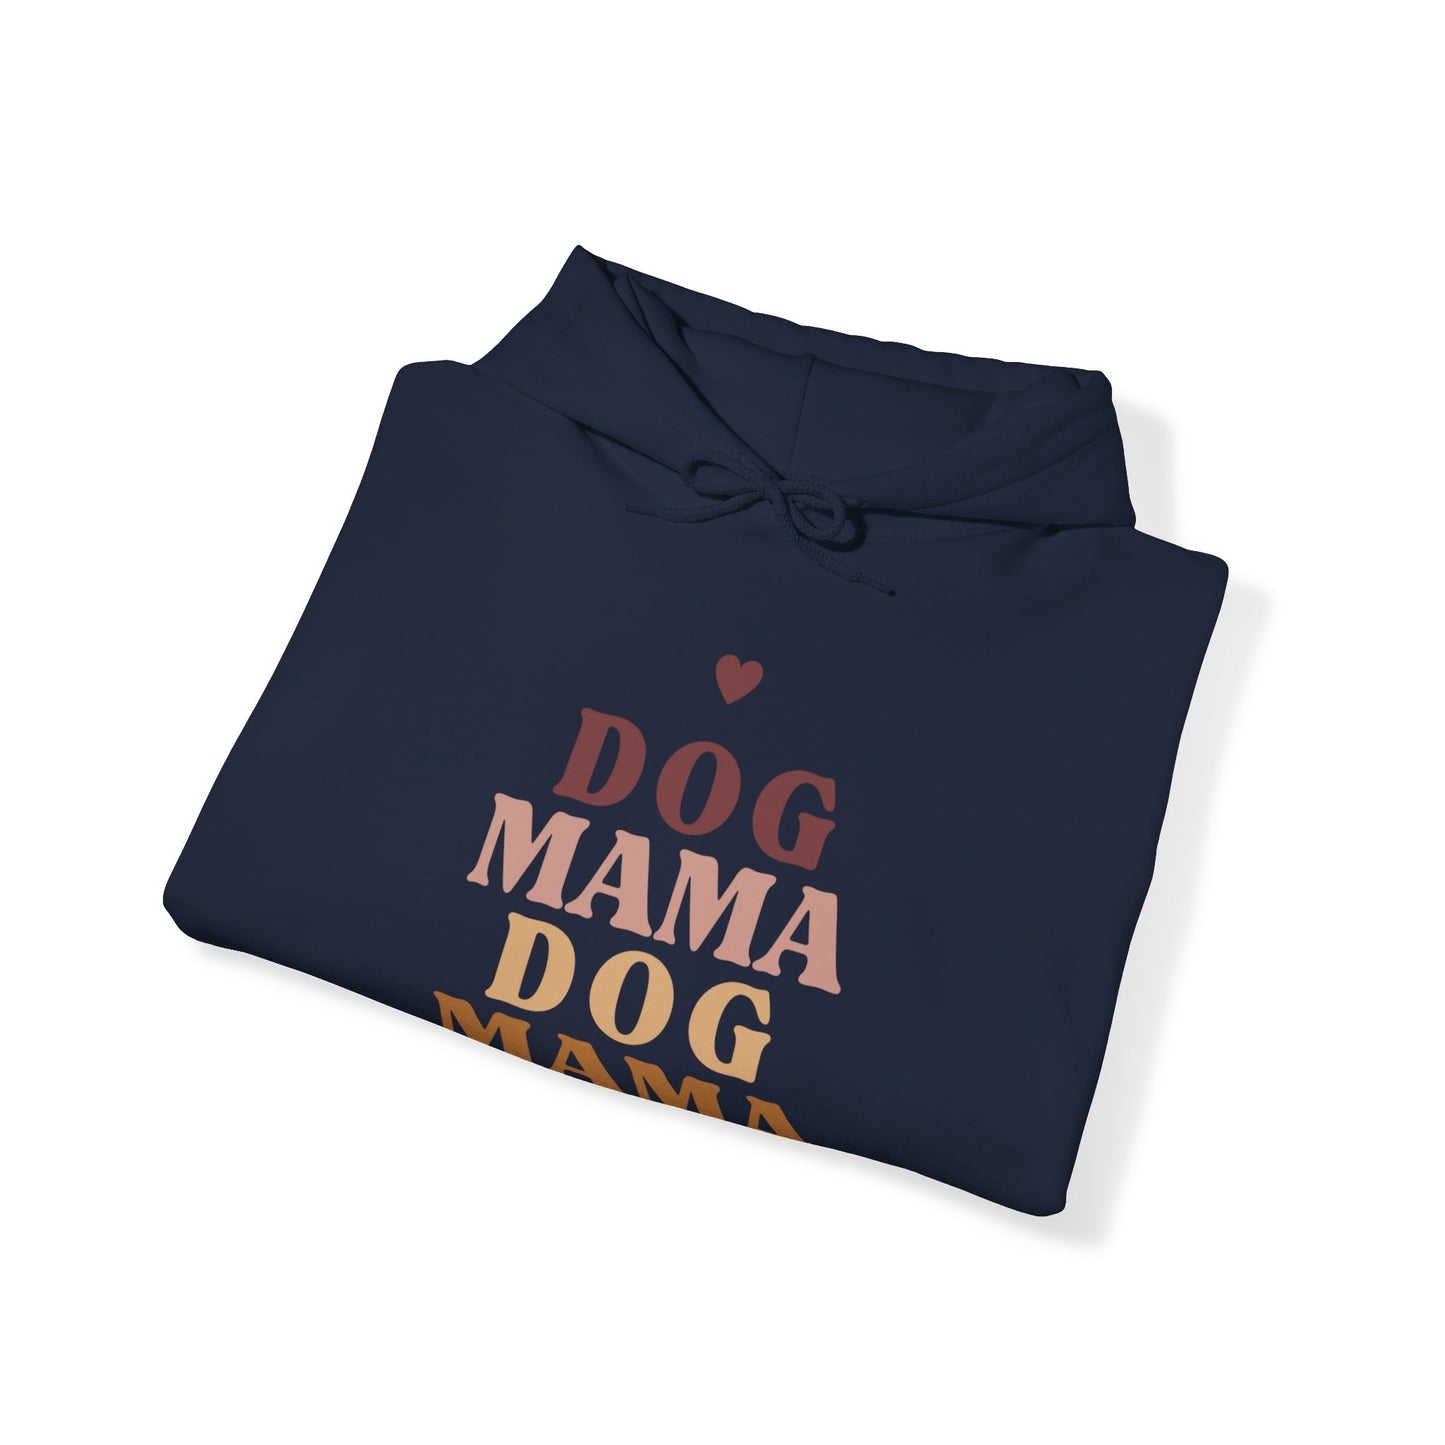 Dog Moma Dog Moma Unisex Heavy Blend™ Hooded Sweatshirt